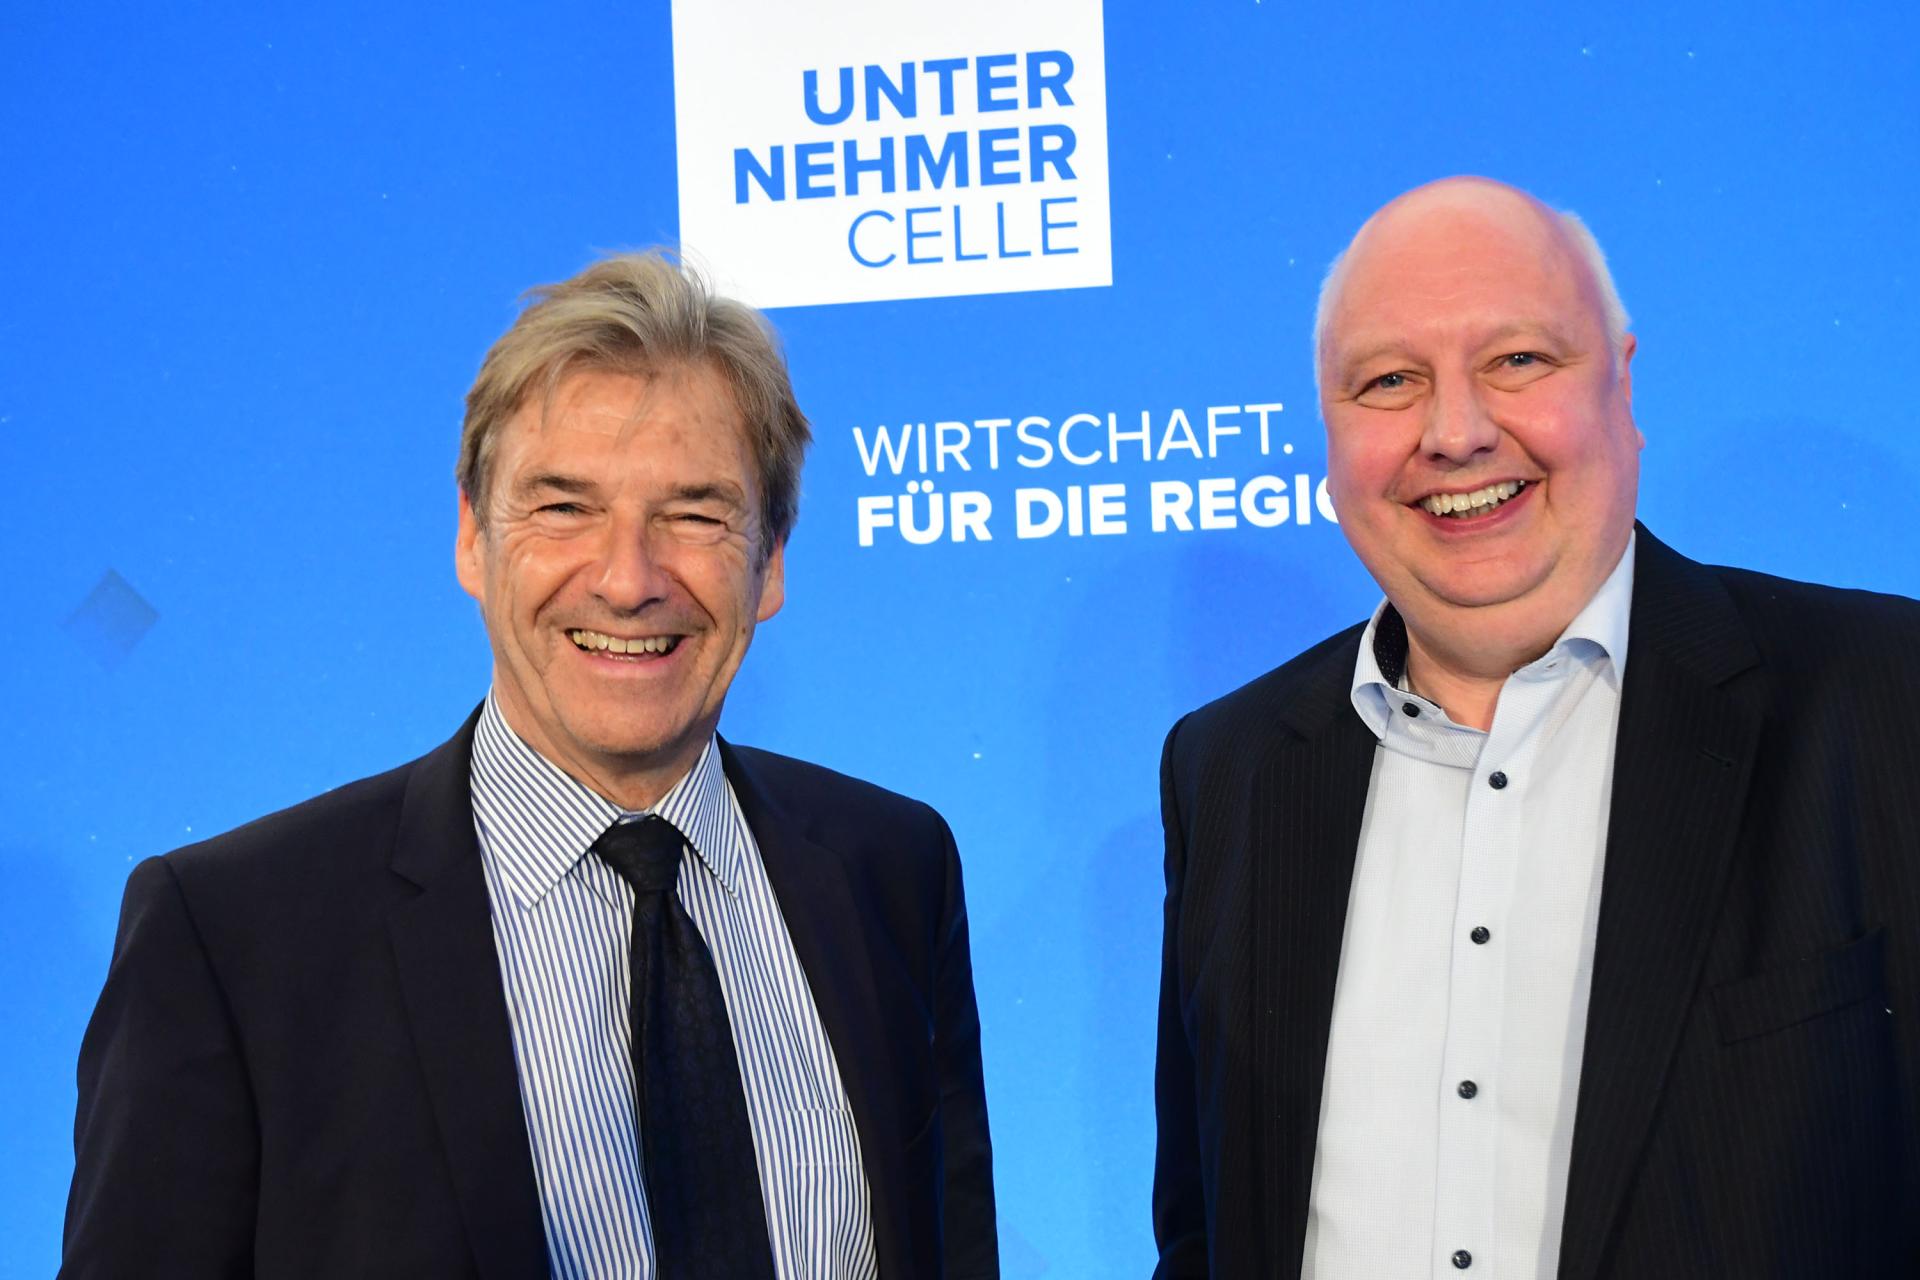 Jörg Bode und Volker Schmidt stellen den neuen Verband Unternehmer Celle vor. Foto: Peter Müller